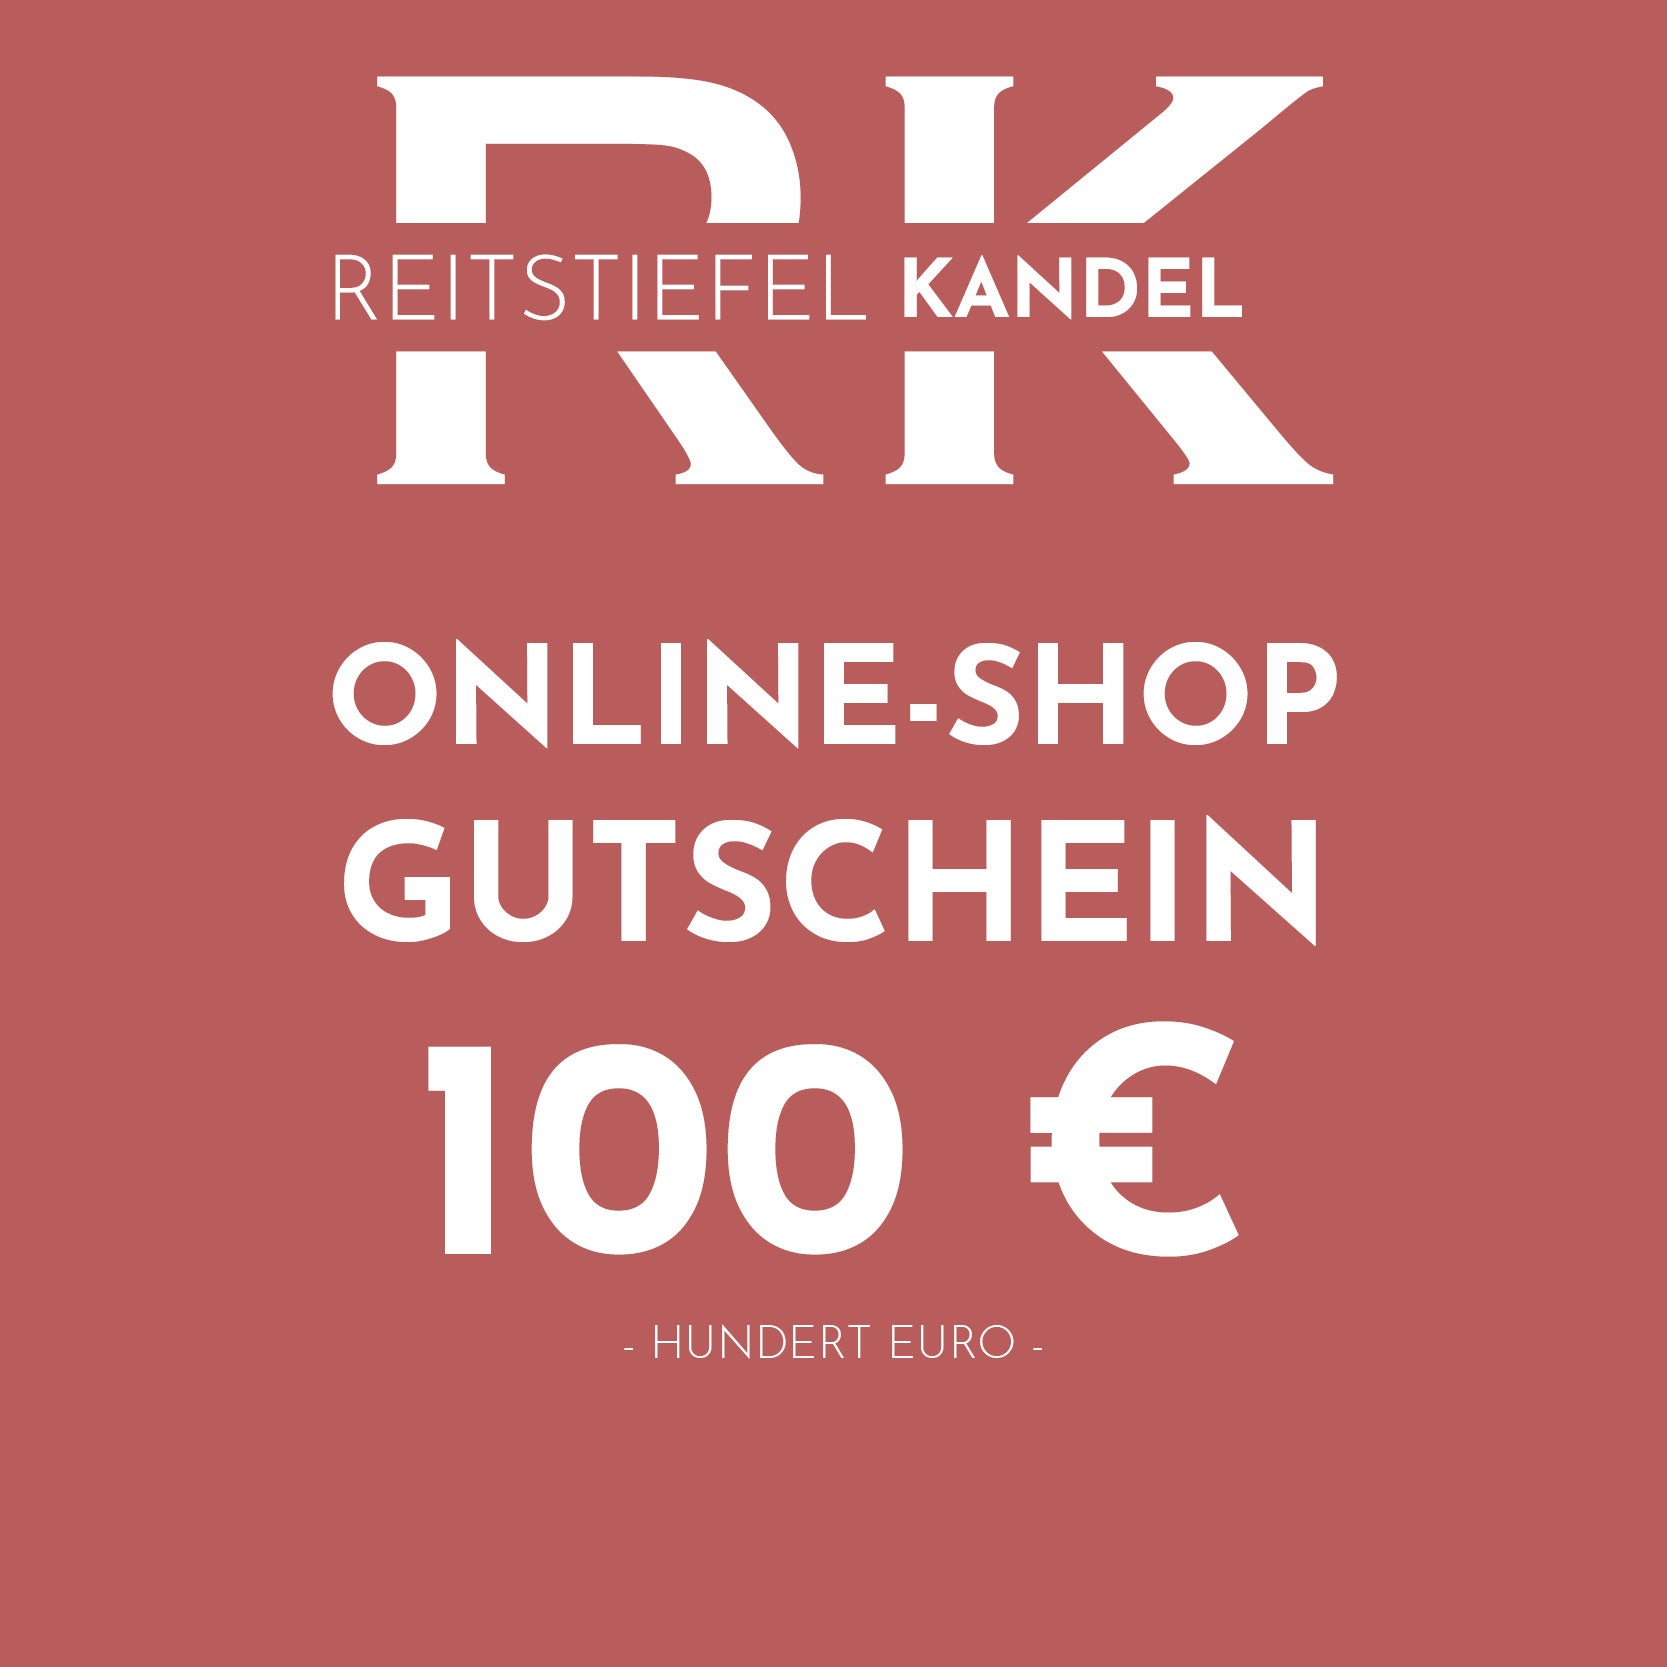 Online-Shop Gutschein - Reitstiefel Kandel - Dein Reitshop